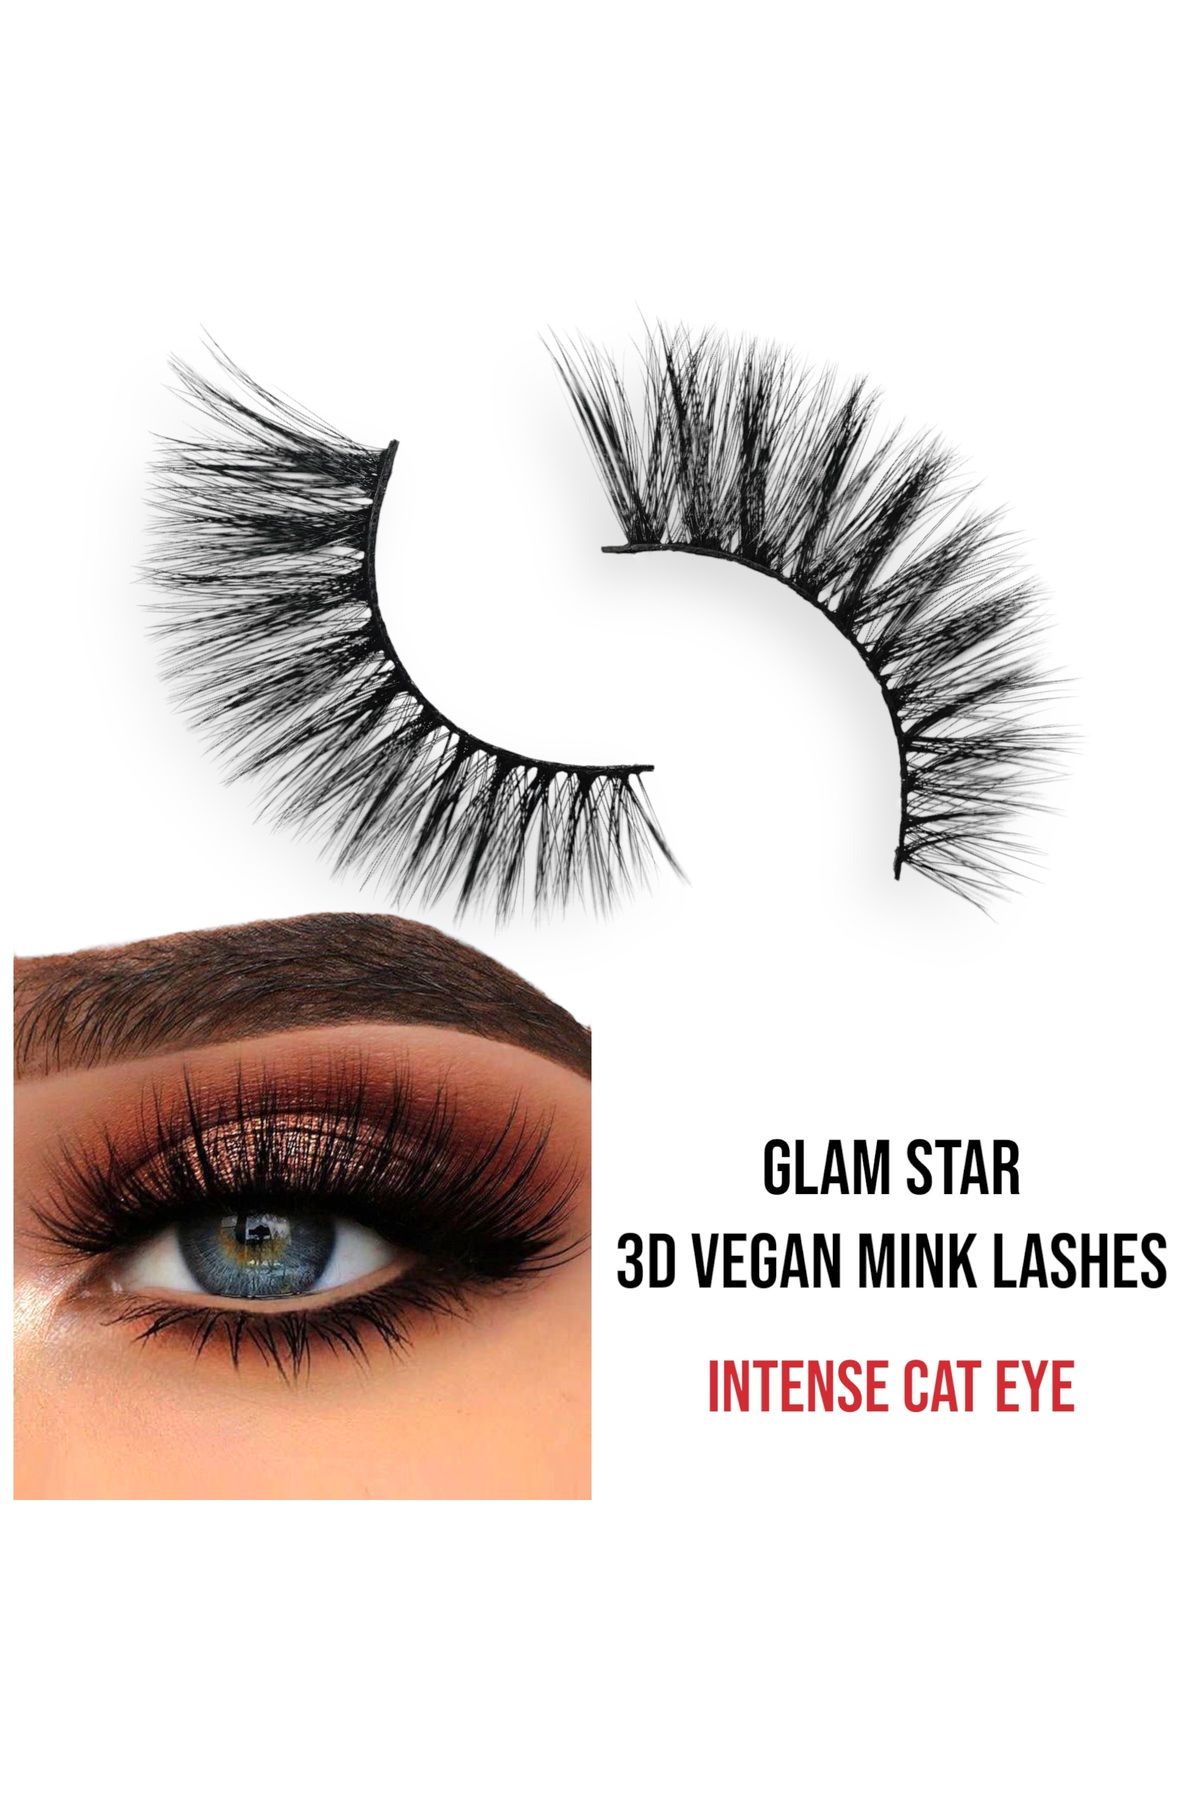 EDA LUXURY BEAUTY Glam Star 3d Faux Mink Takma Kirpik Uzun Yoğun Çift Katlı Hacimli Çekik Cat Eye Vegan Fake Eyelashes